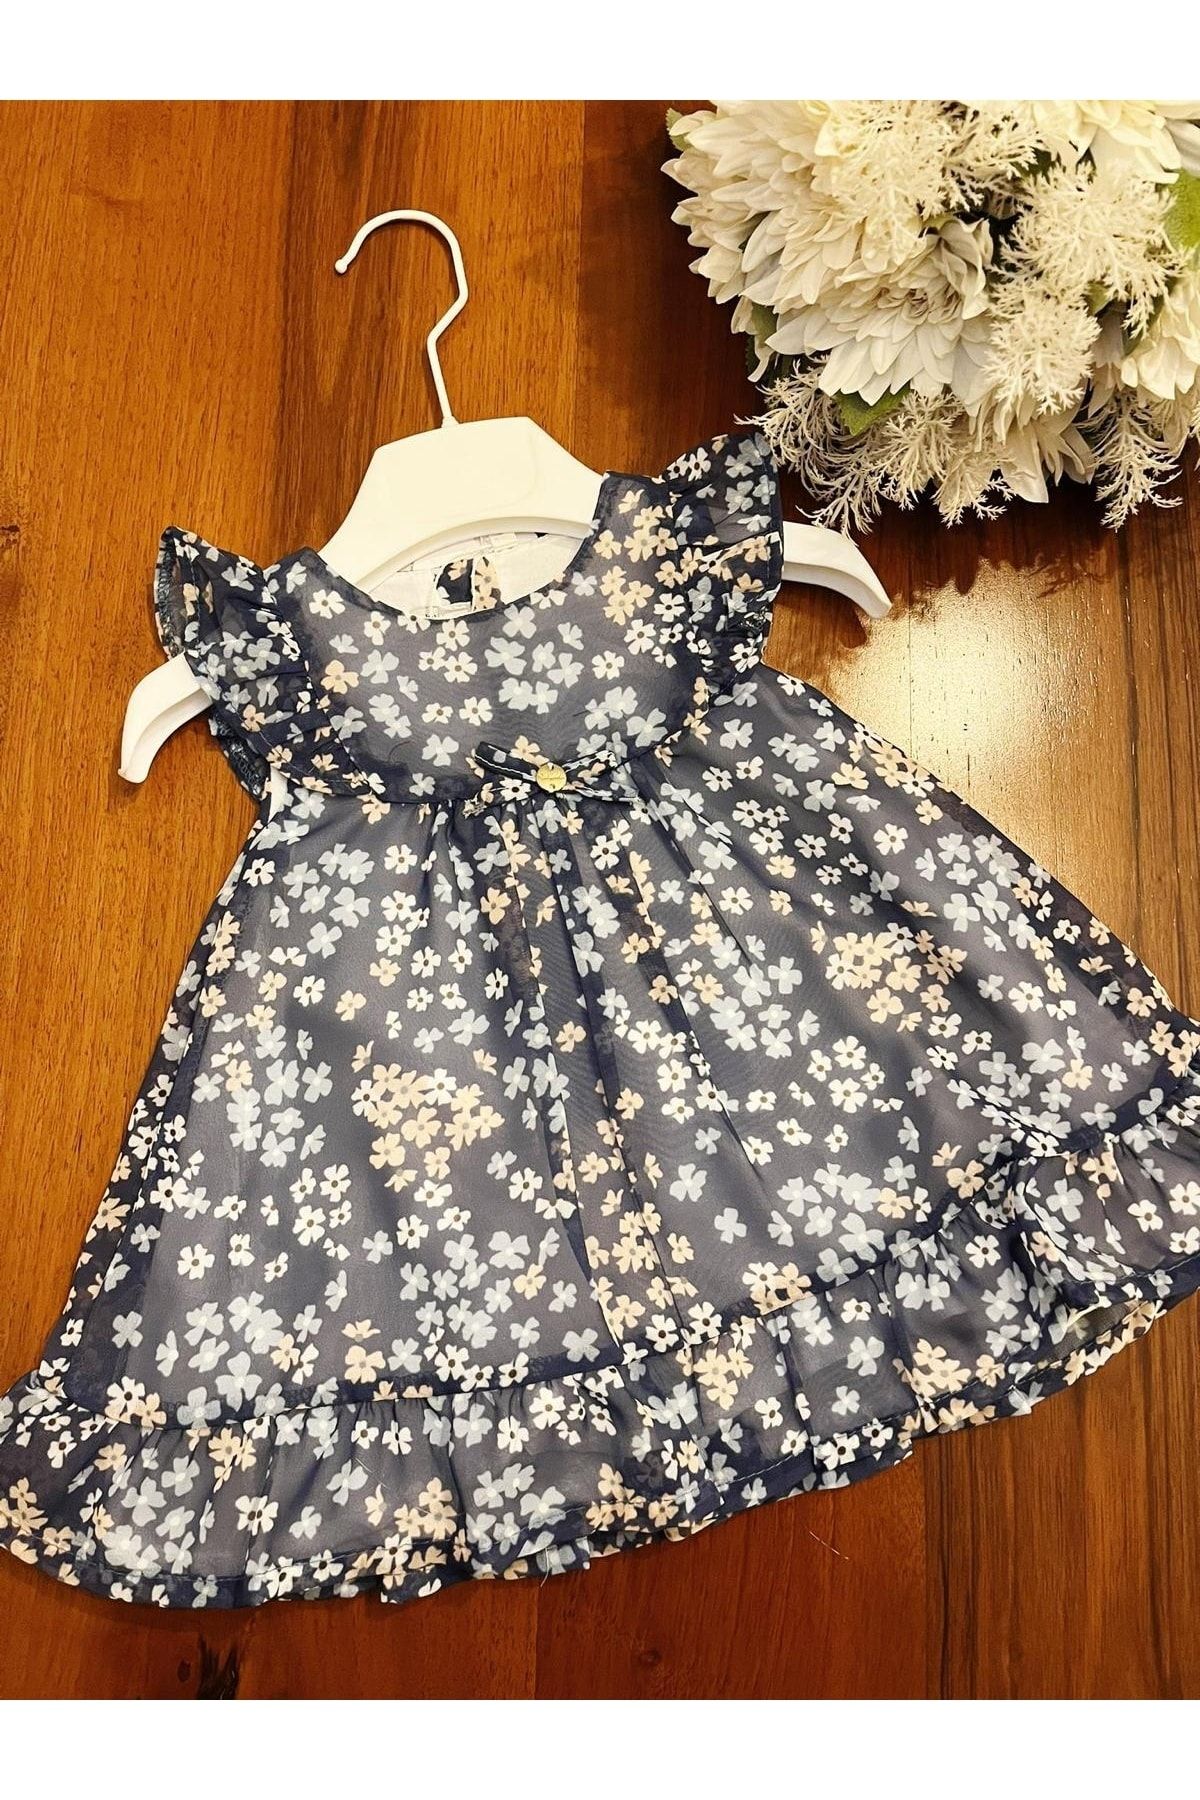 Babydola Kız Bebek Şifon Elbise Çiçek Desenli